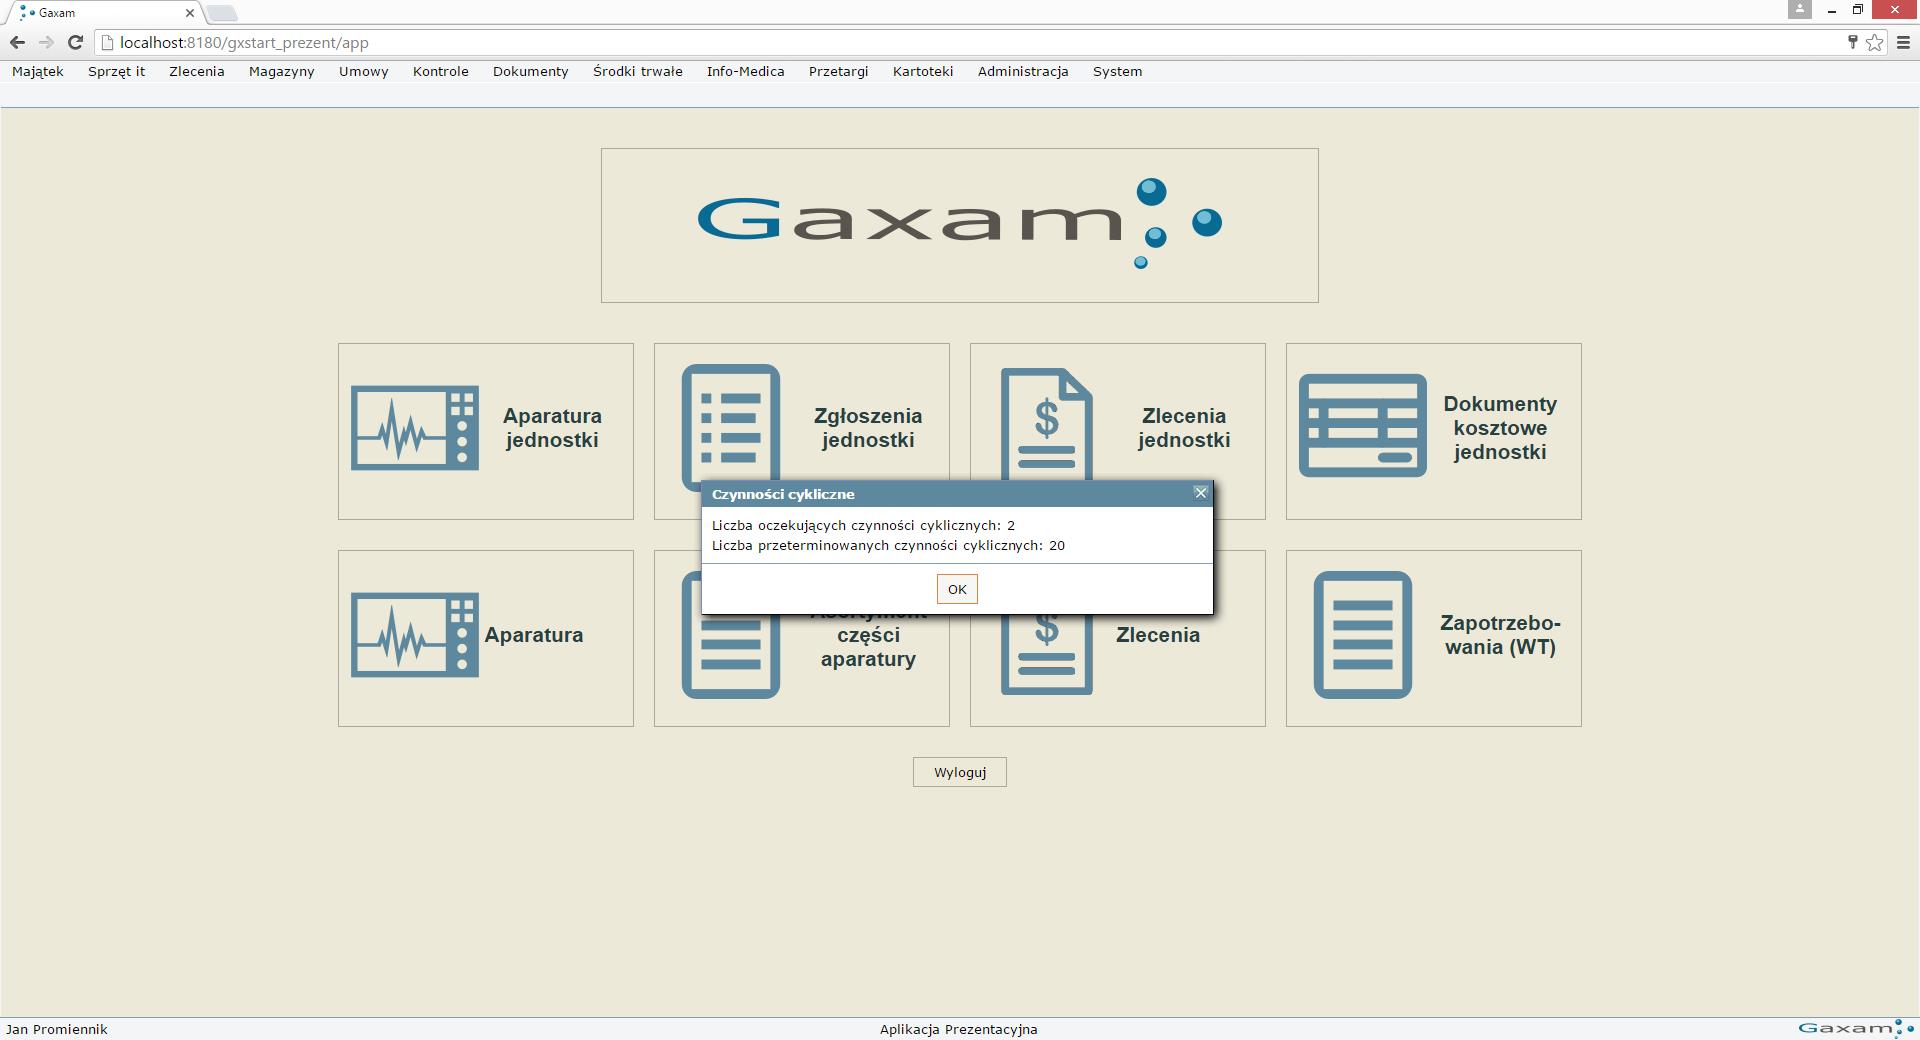 Oprogramowanie do zarządzania aparaturą medyczną Gaxam gxAparatura